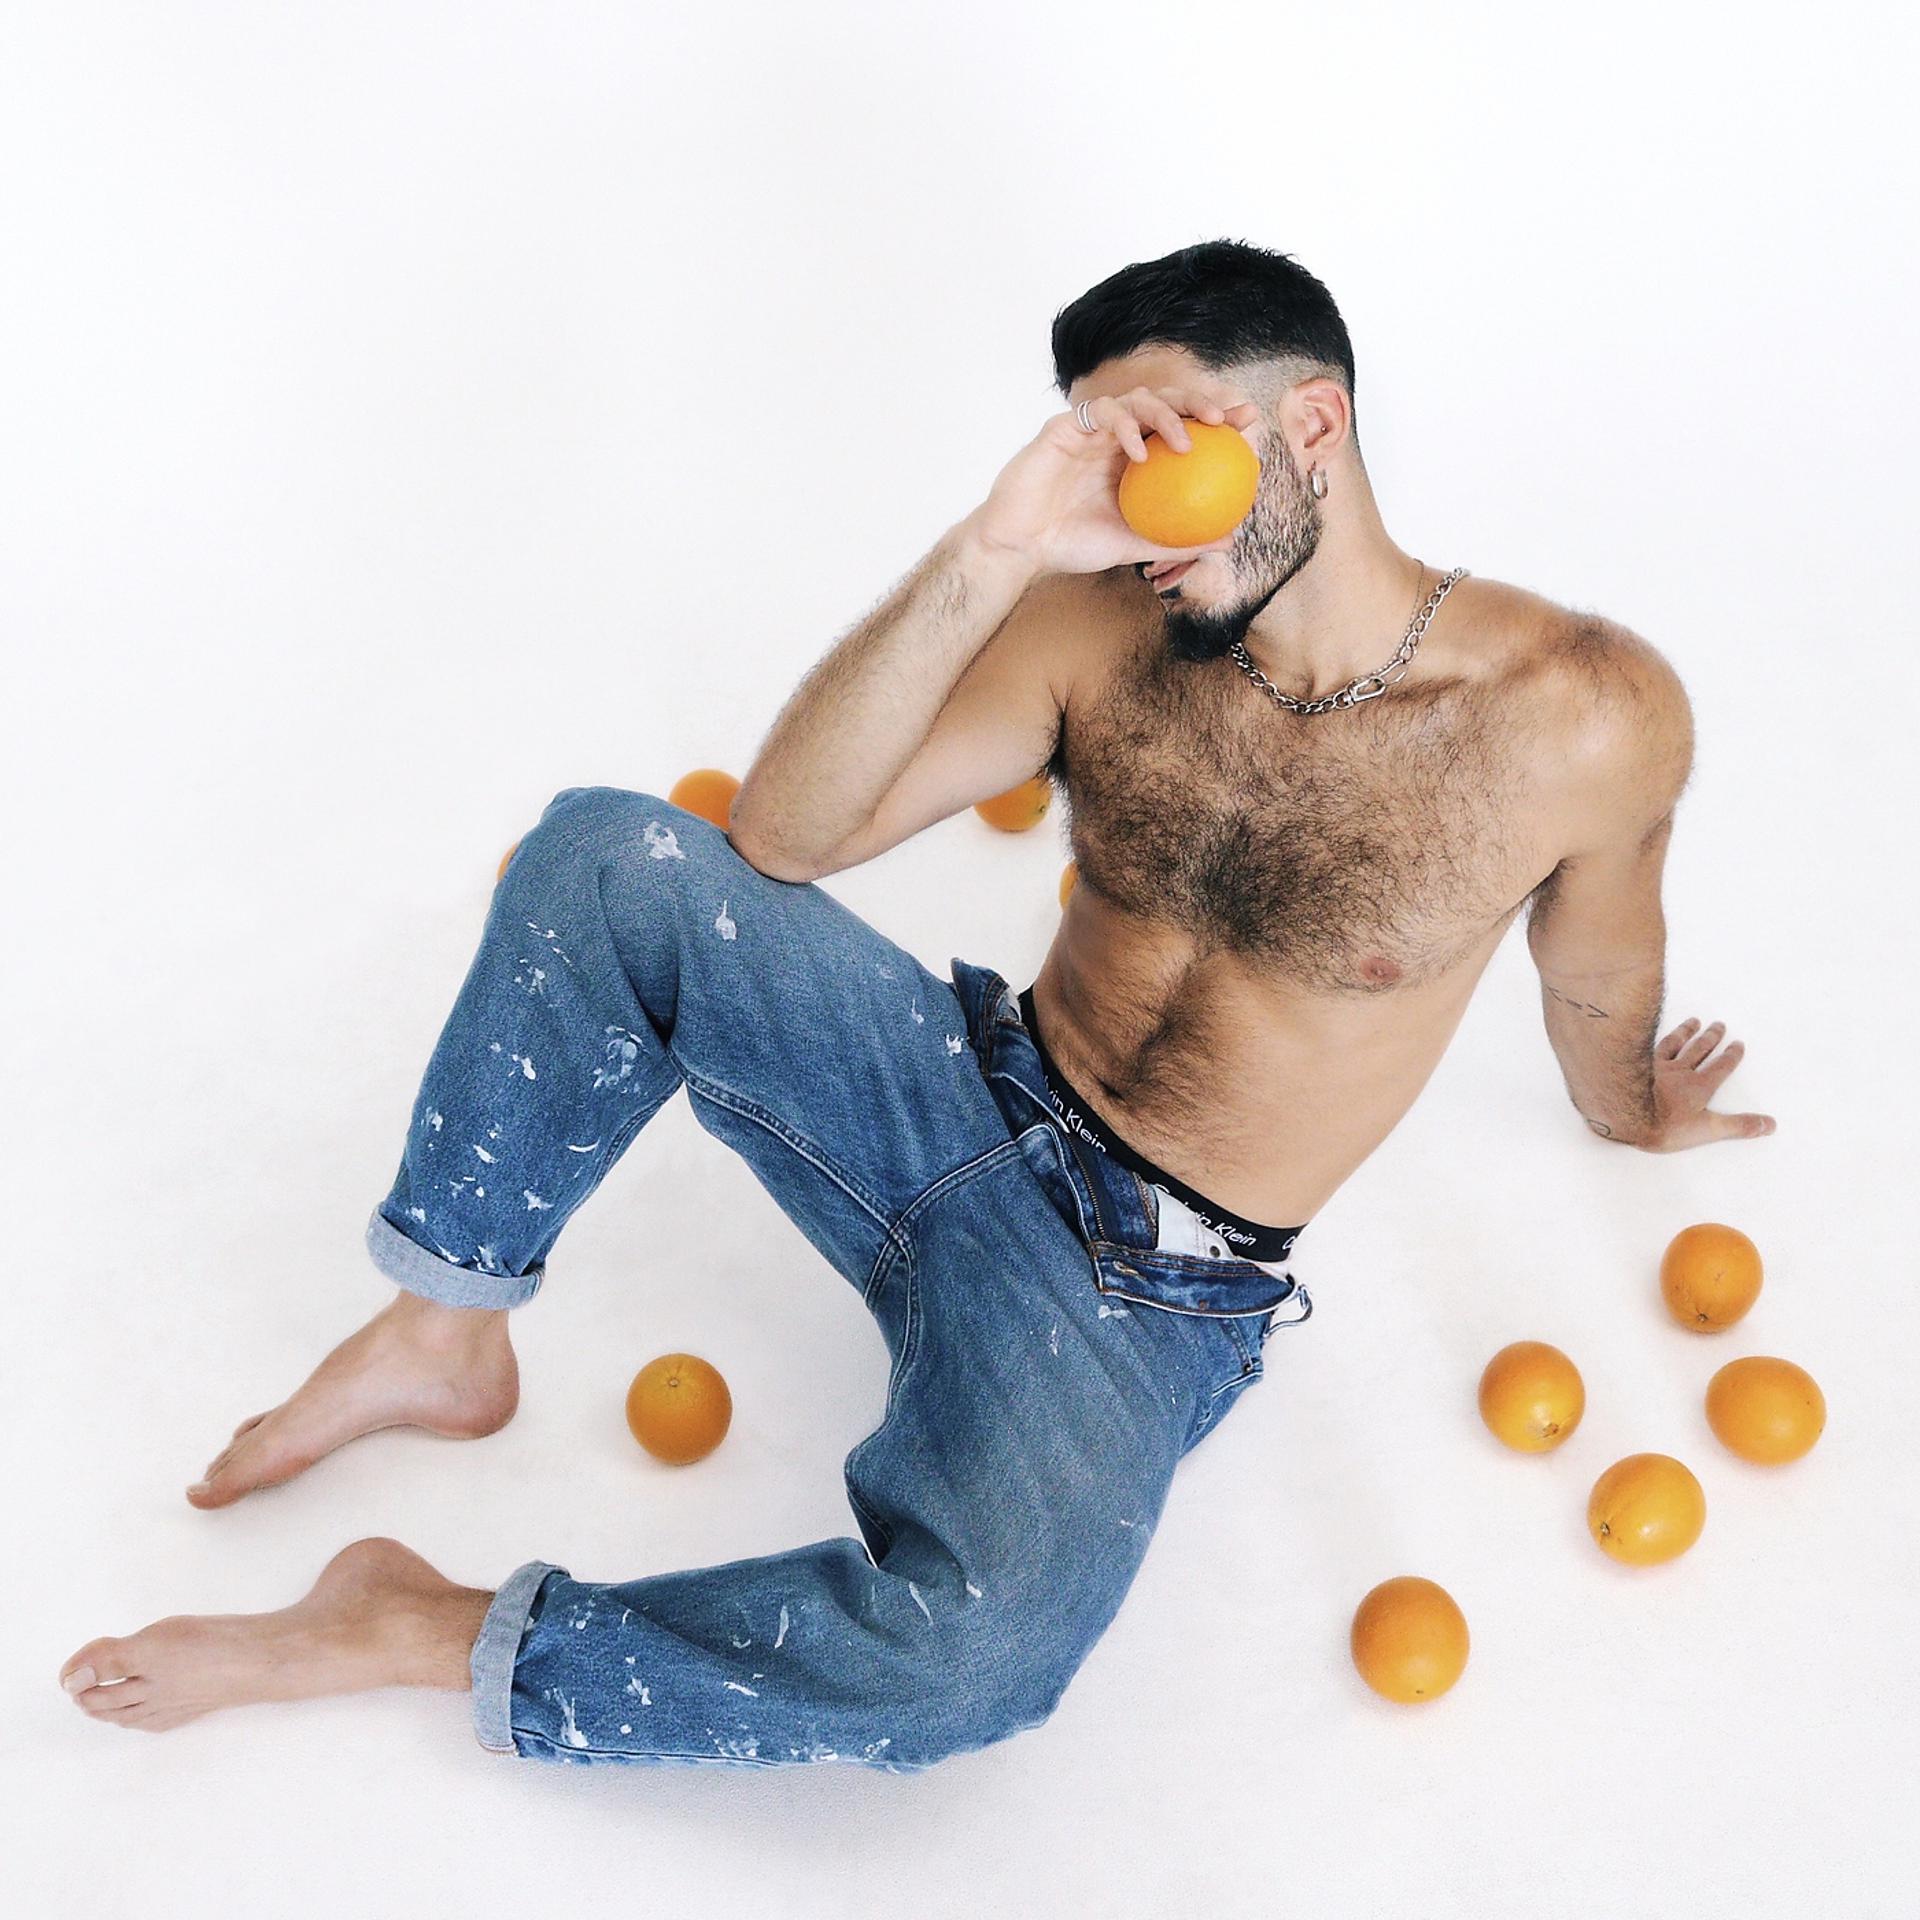 Постер альбома Tangerine